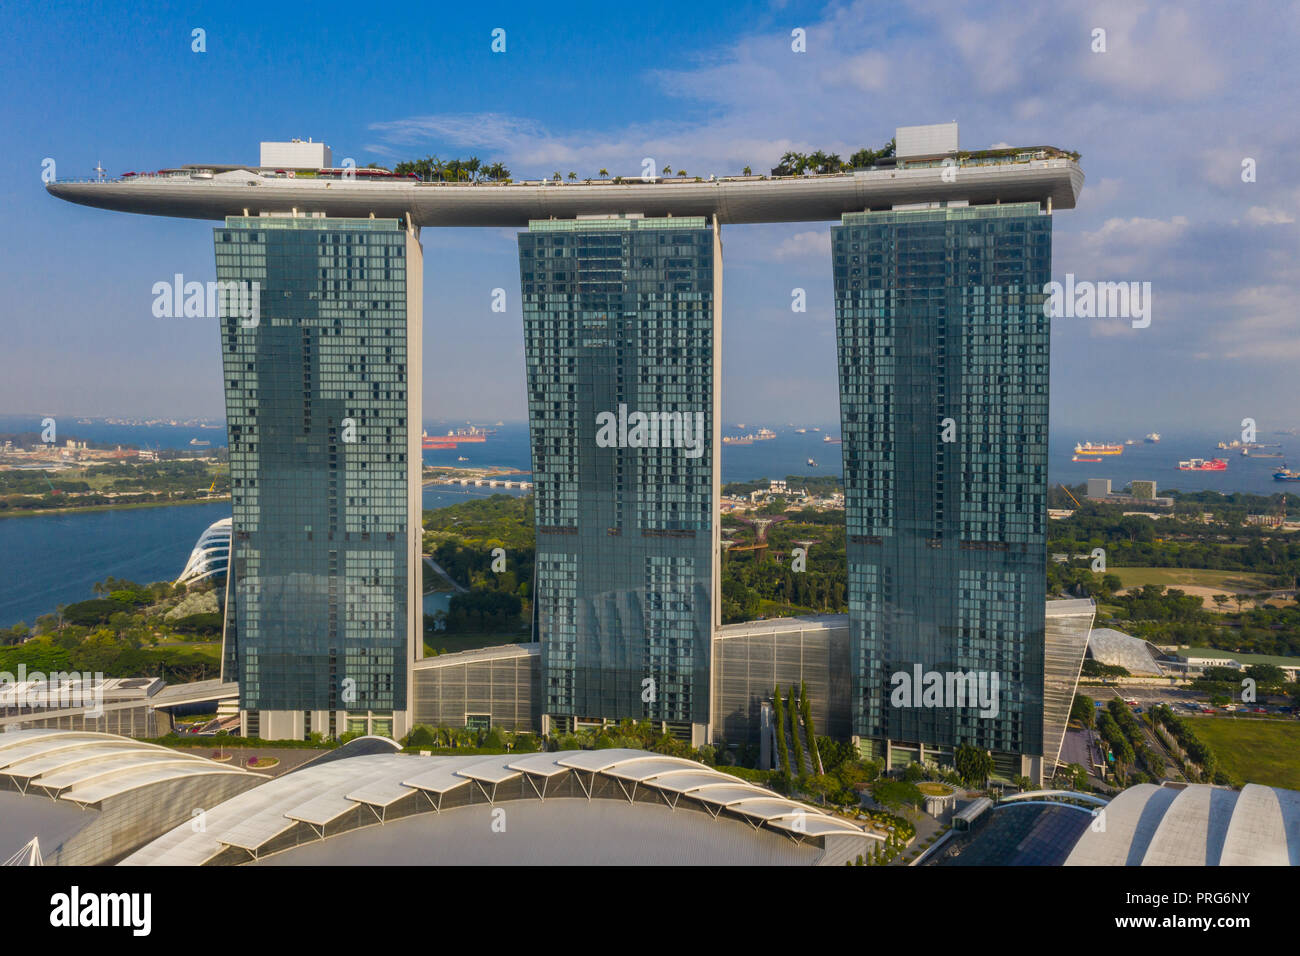 Facade of Marina Bay Sands hotel and sky garden, Singapore. Stock Photo